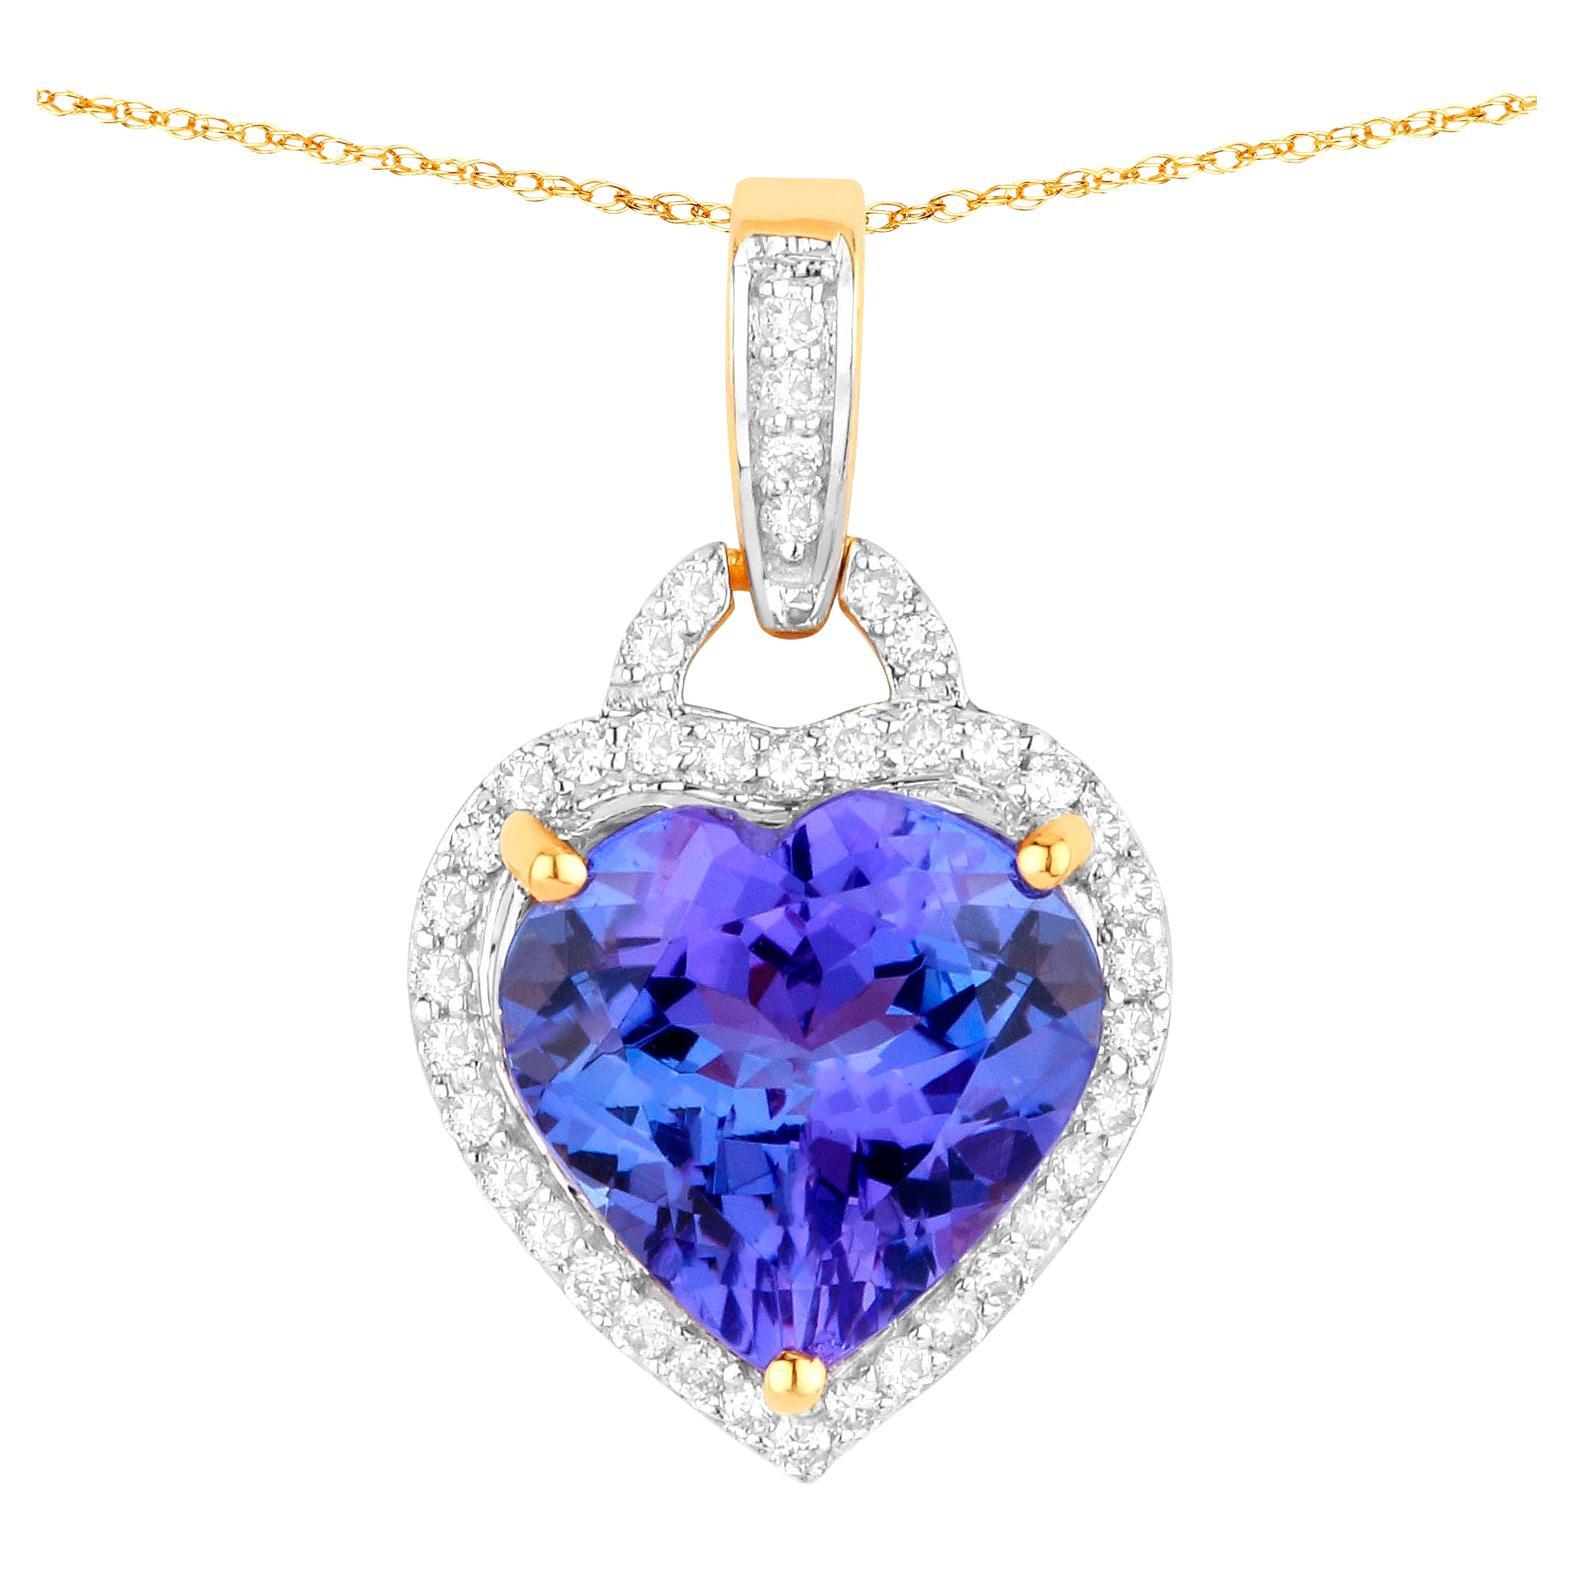 Tanzanite Heart Pendant Necklace Diamond Setting 2.28 Carats 14K Yellow Gold